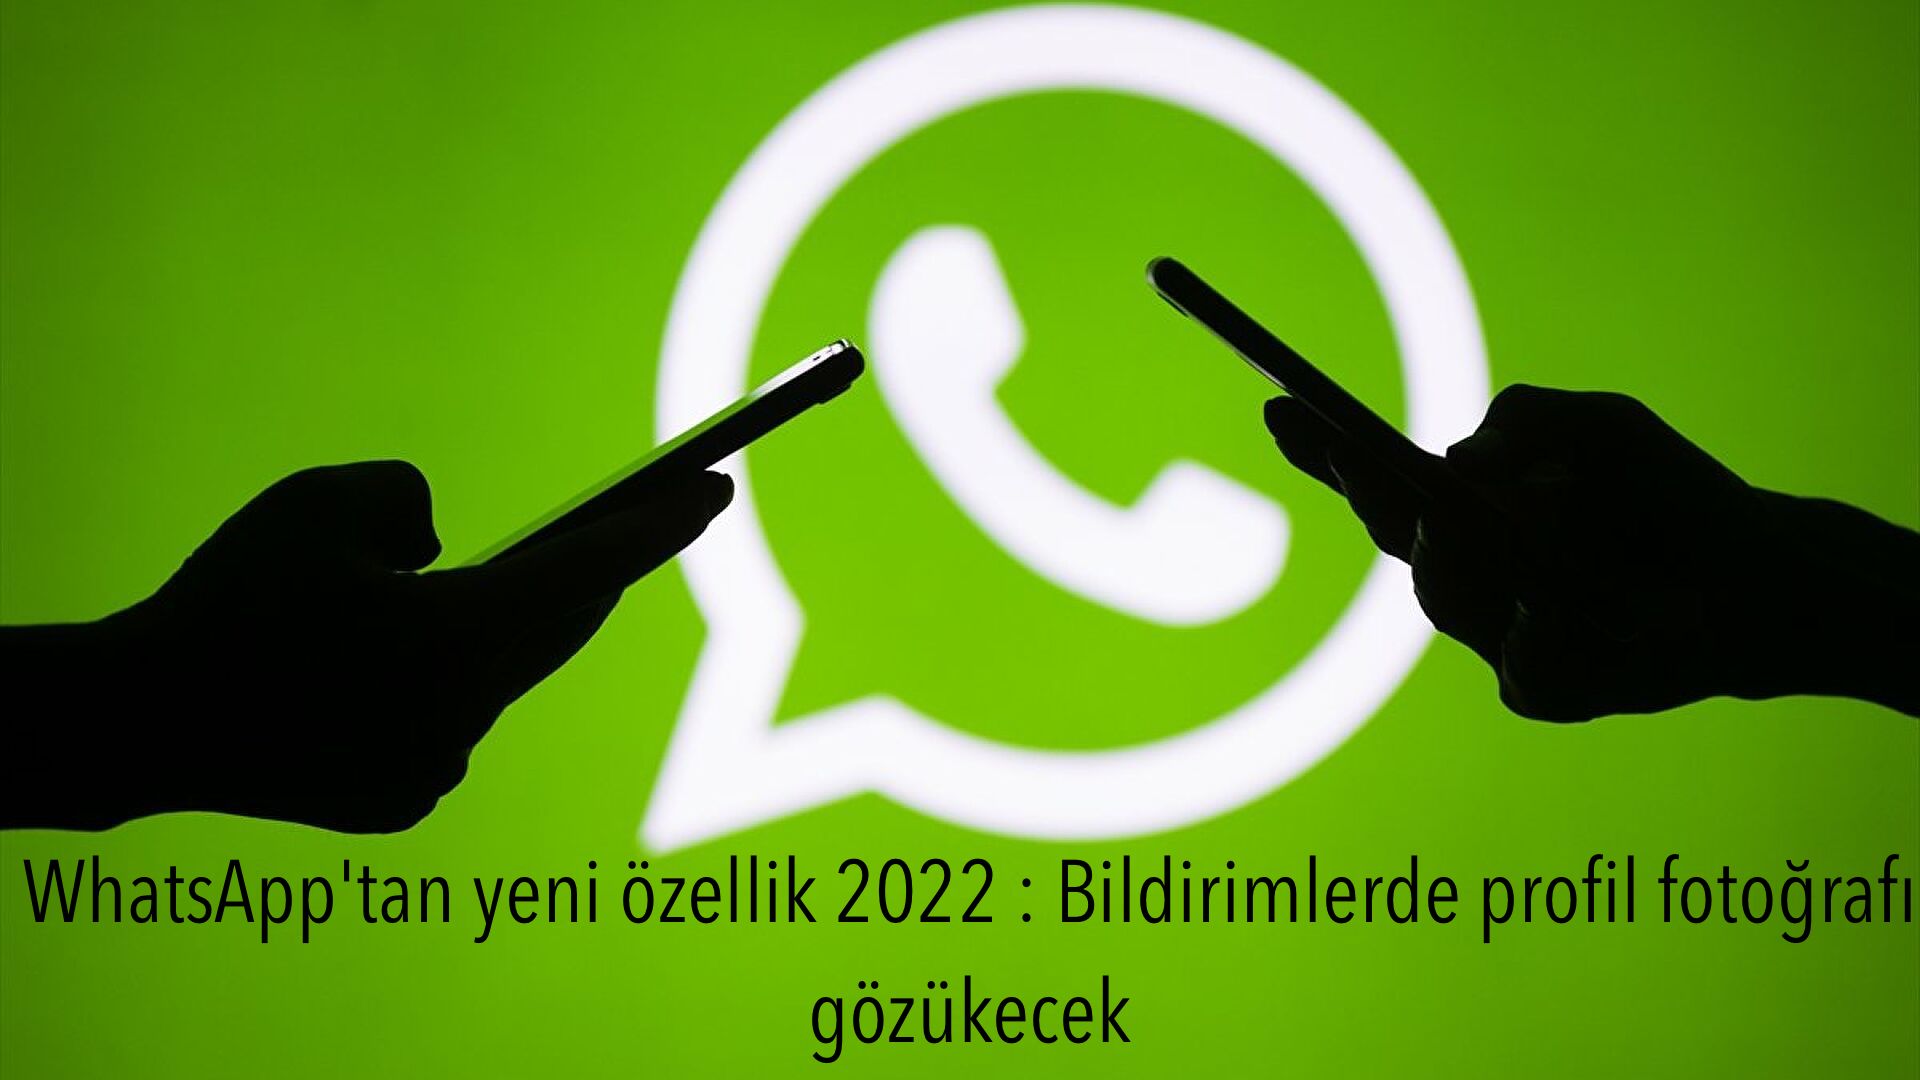 WhatsApp’tan yeni özellik 2022 : Bildirimlerde profil fotoğrafı gözükecek